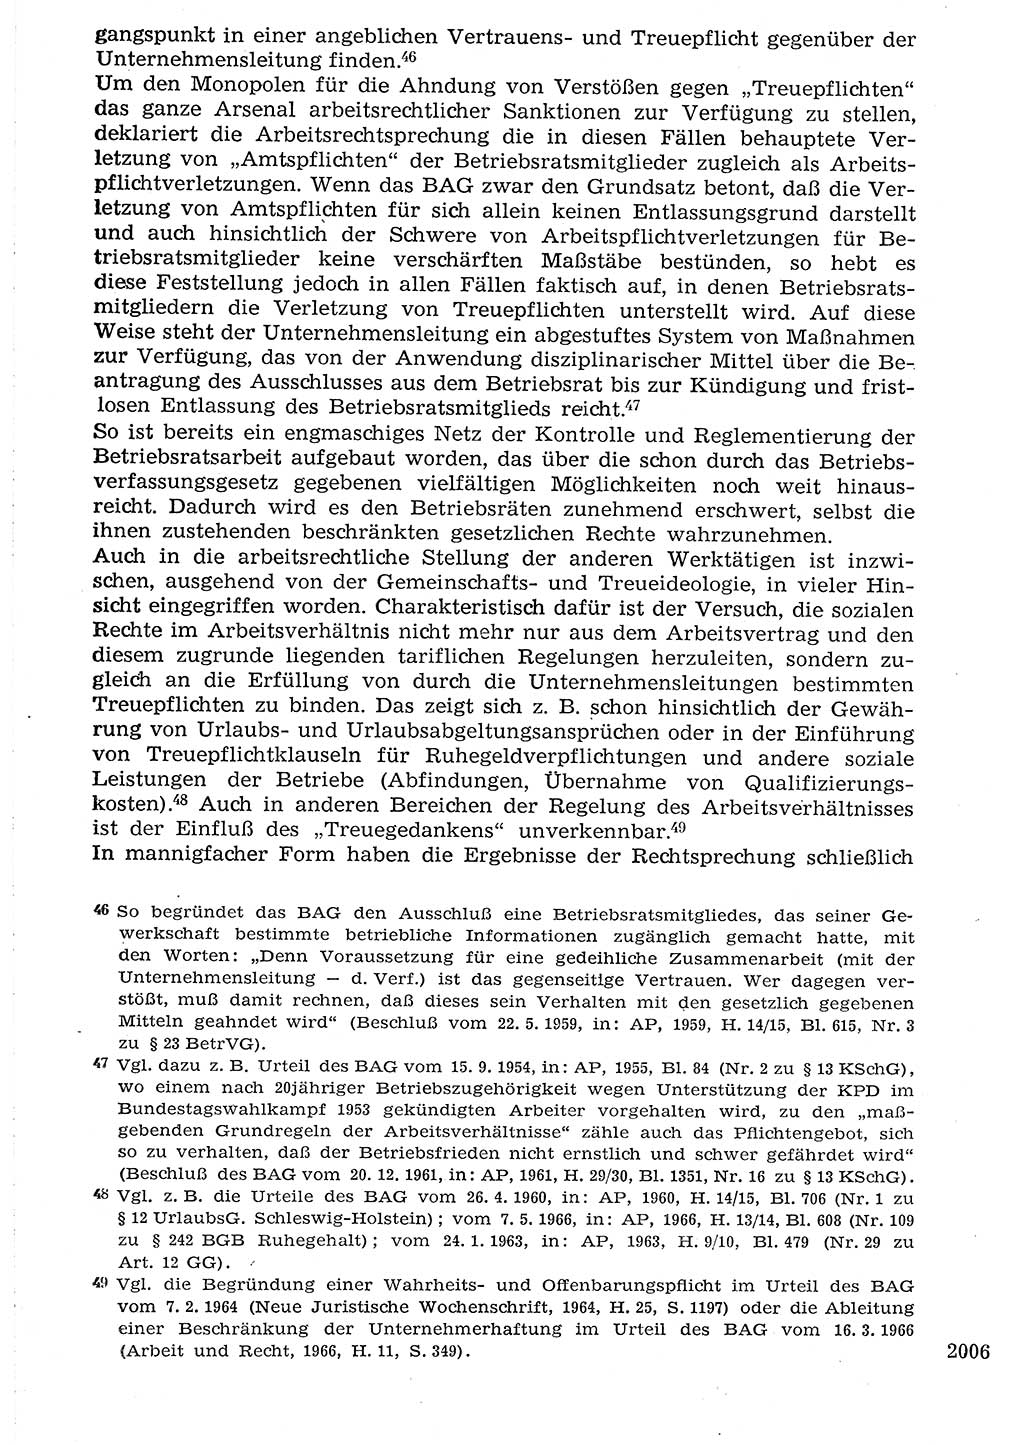 Staat und Recht (StuR), 17. Jahrgang [Deutsche Demokratische Republik (DDR)] 1968, Seite 2006 (StuR DDR 1968, S. 2006)